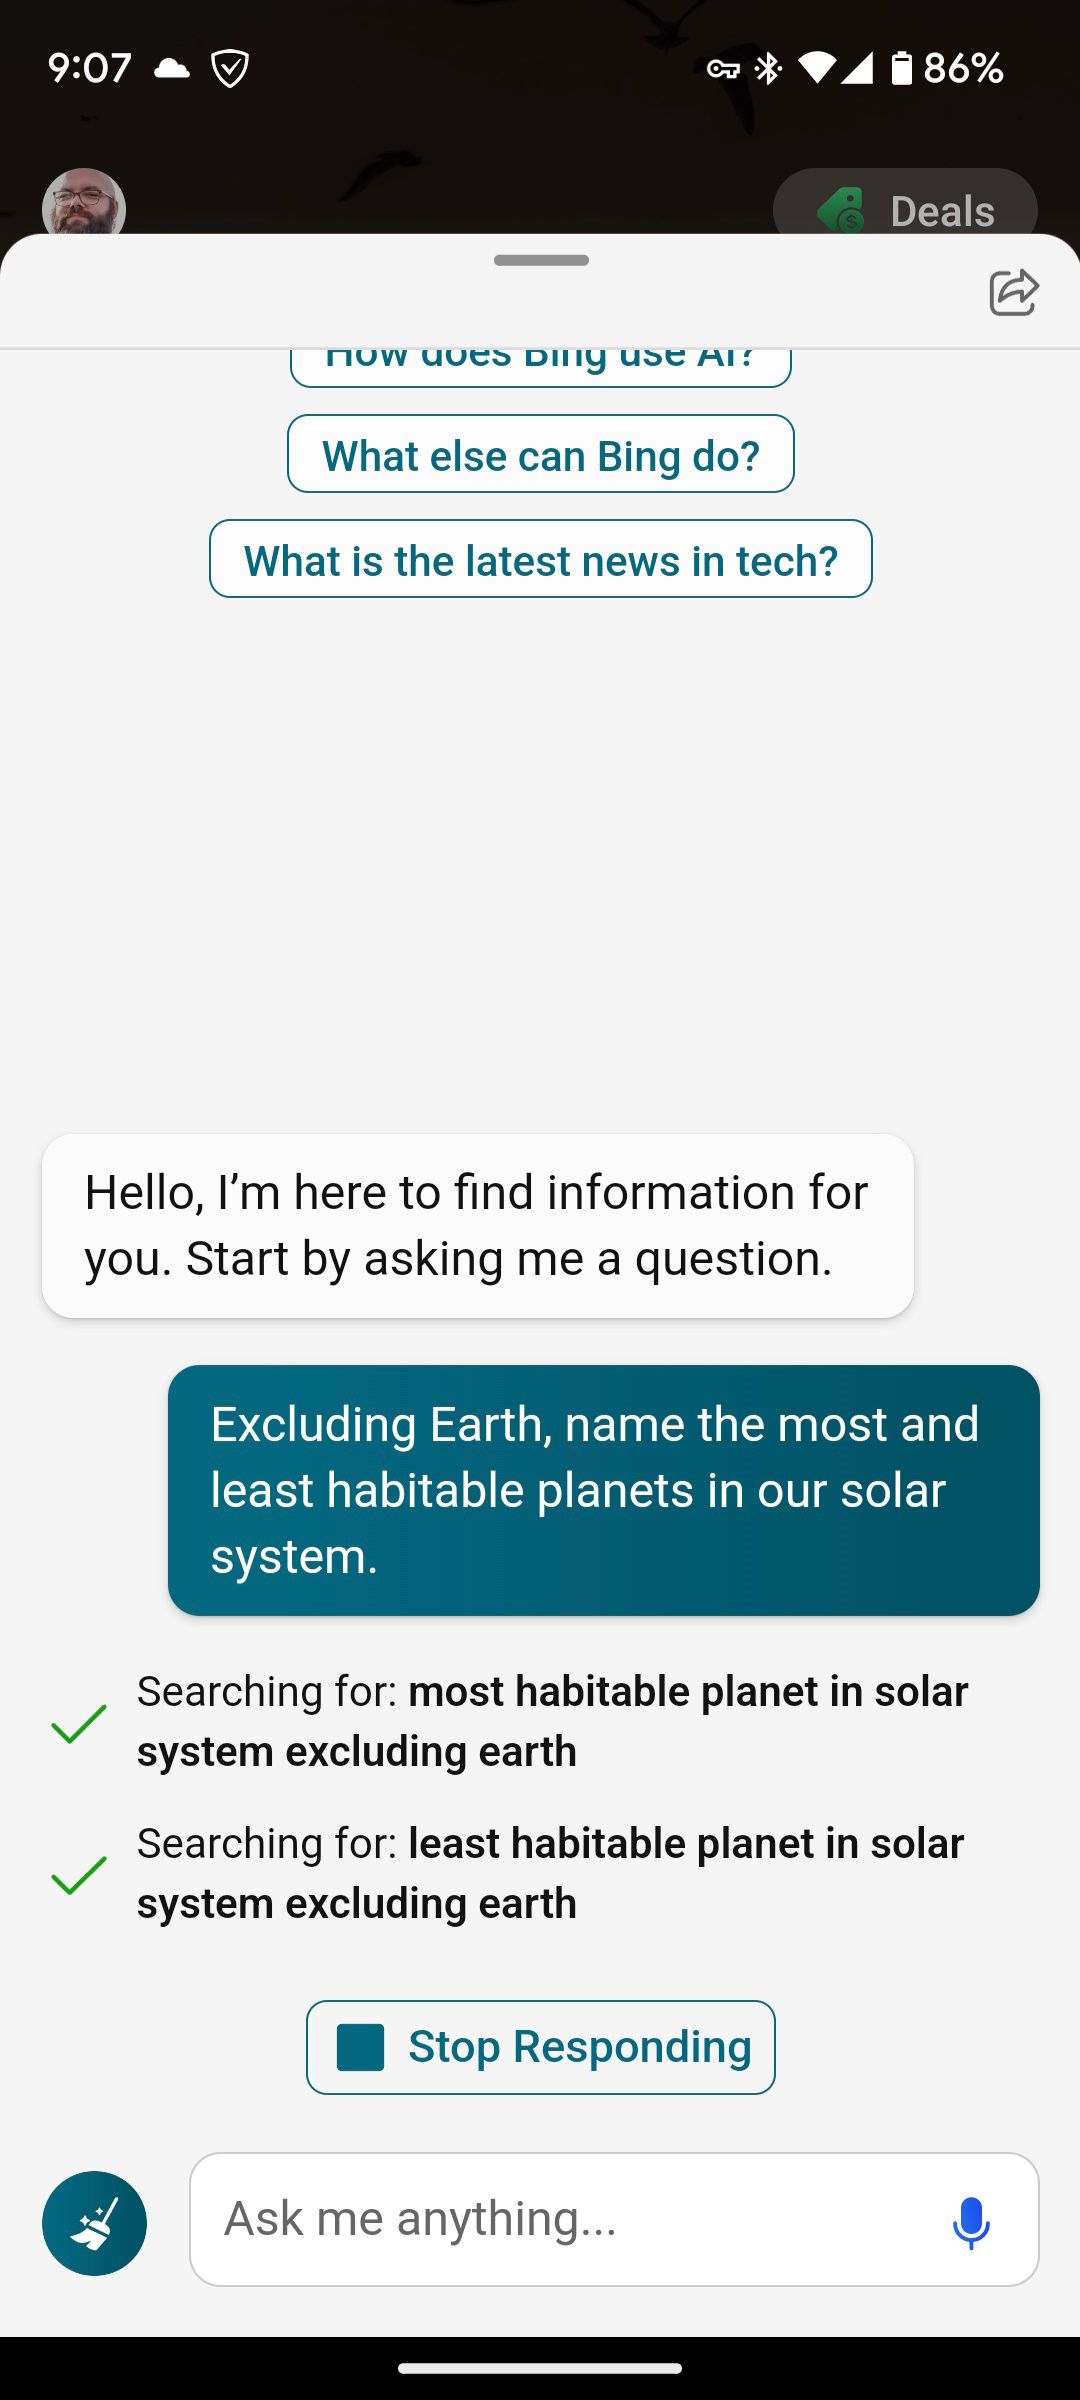 Bing AI mencantumkan planet yang paling banyak dan paling tidak layak huni di tata surya